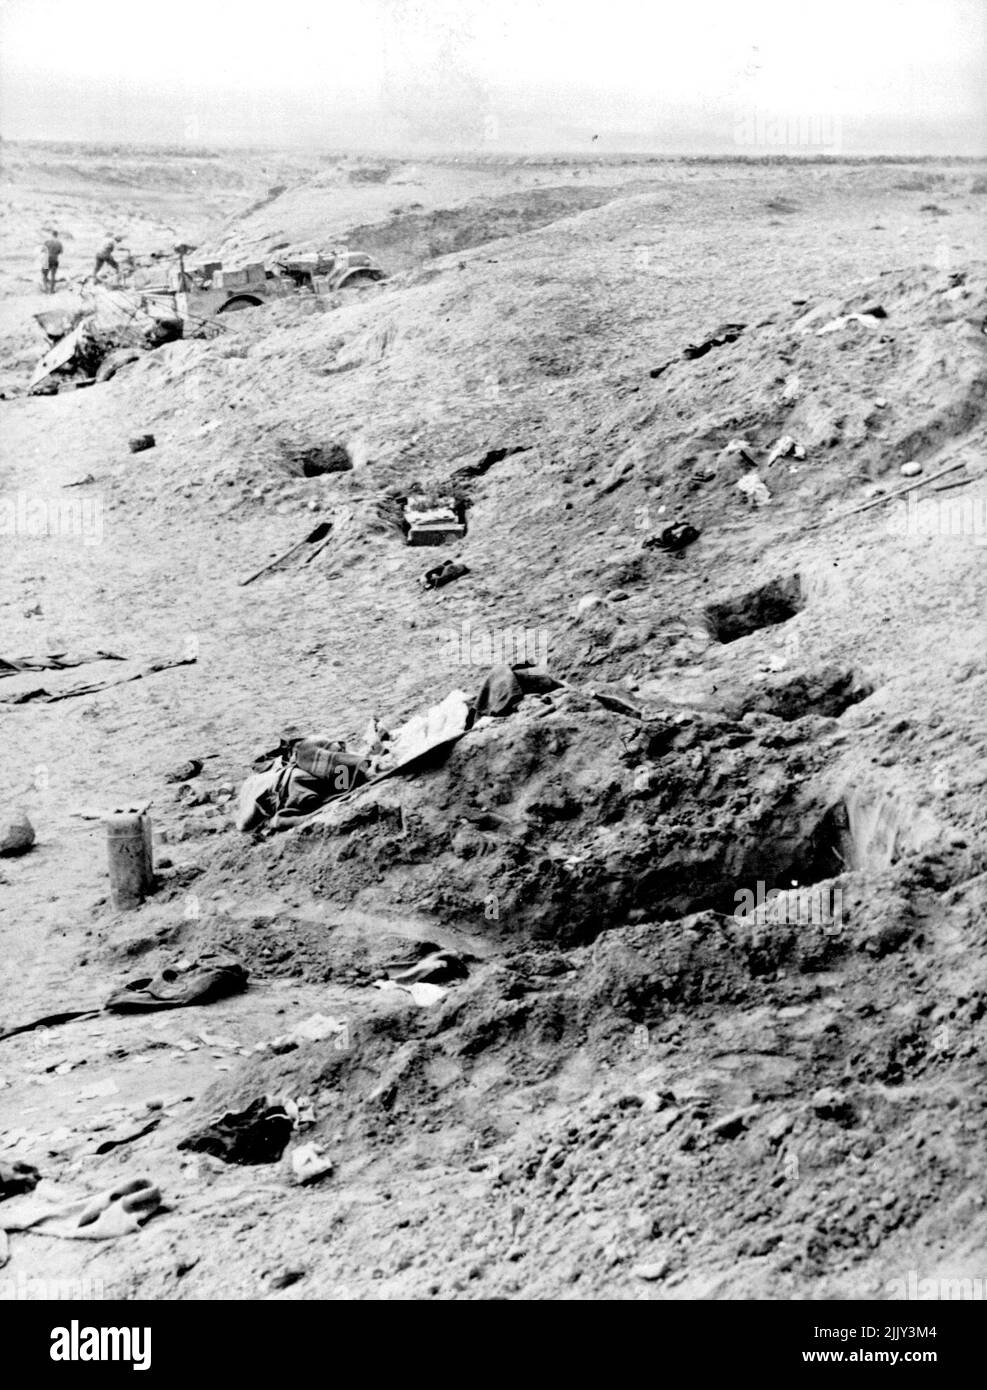 Tranchées abandonnées par l'axe américain contre-attaque en Tunisie les tranchées et l'équipement montrés ici ont été abandonnées à la hâte par les forces de l'axe, lorsque l'armée américaine a réussi à contre-attaquer en Tunisie. 7 mai 1943. (Photo de l'Office of War information Picture des États-Unis). Banque D'Images